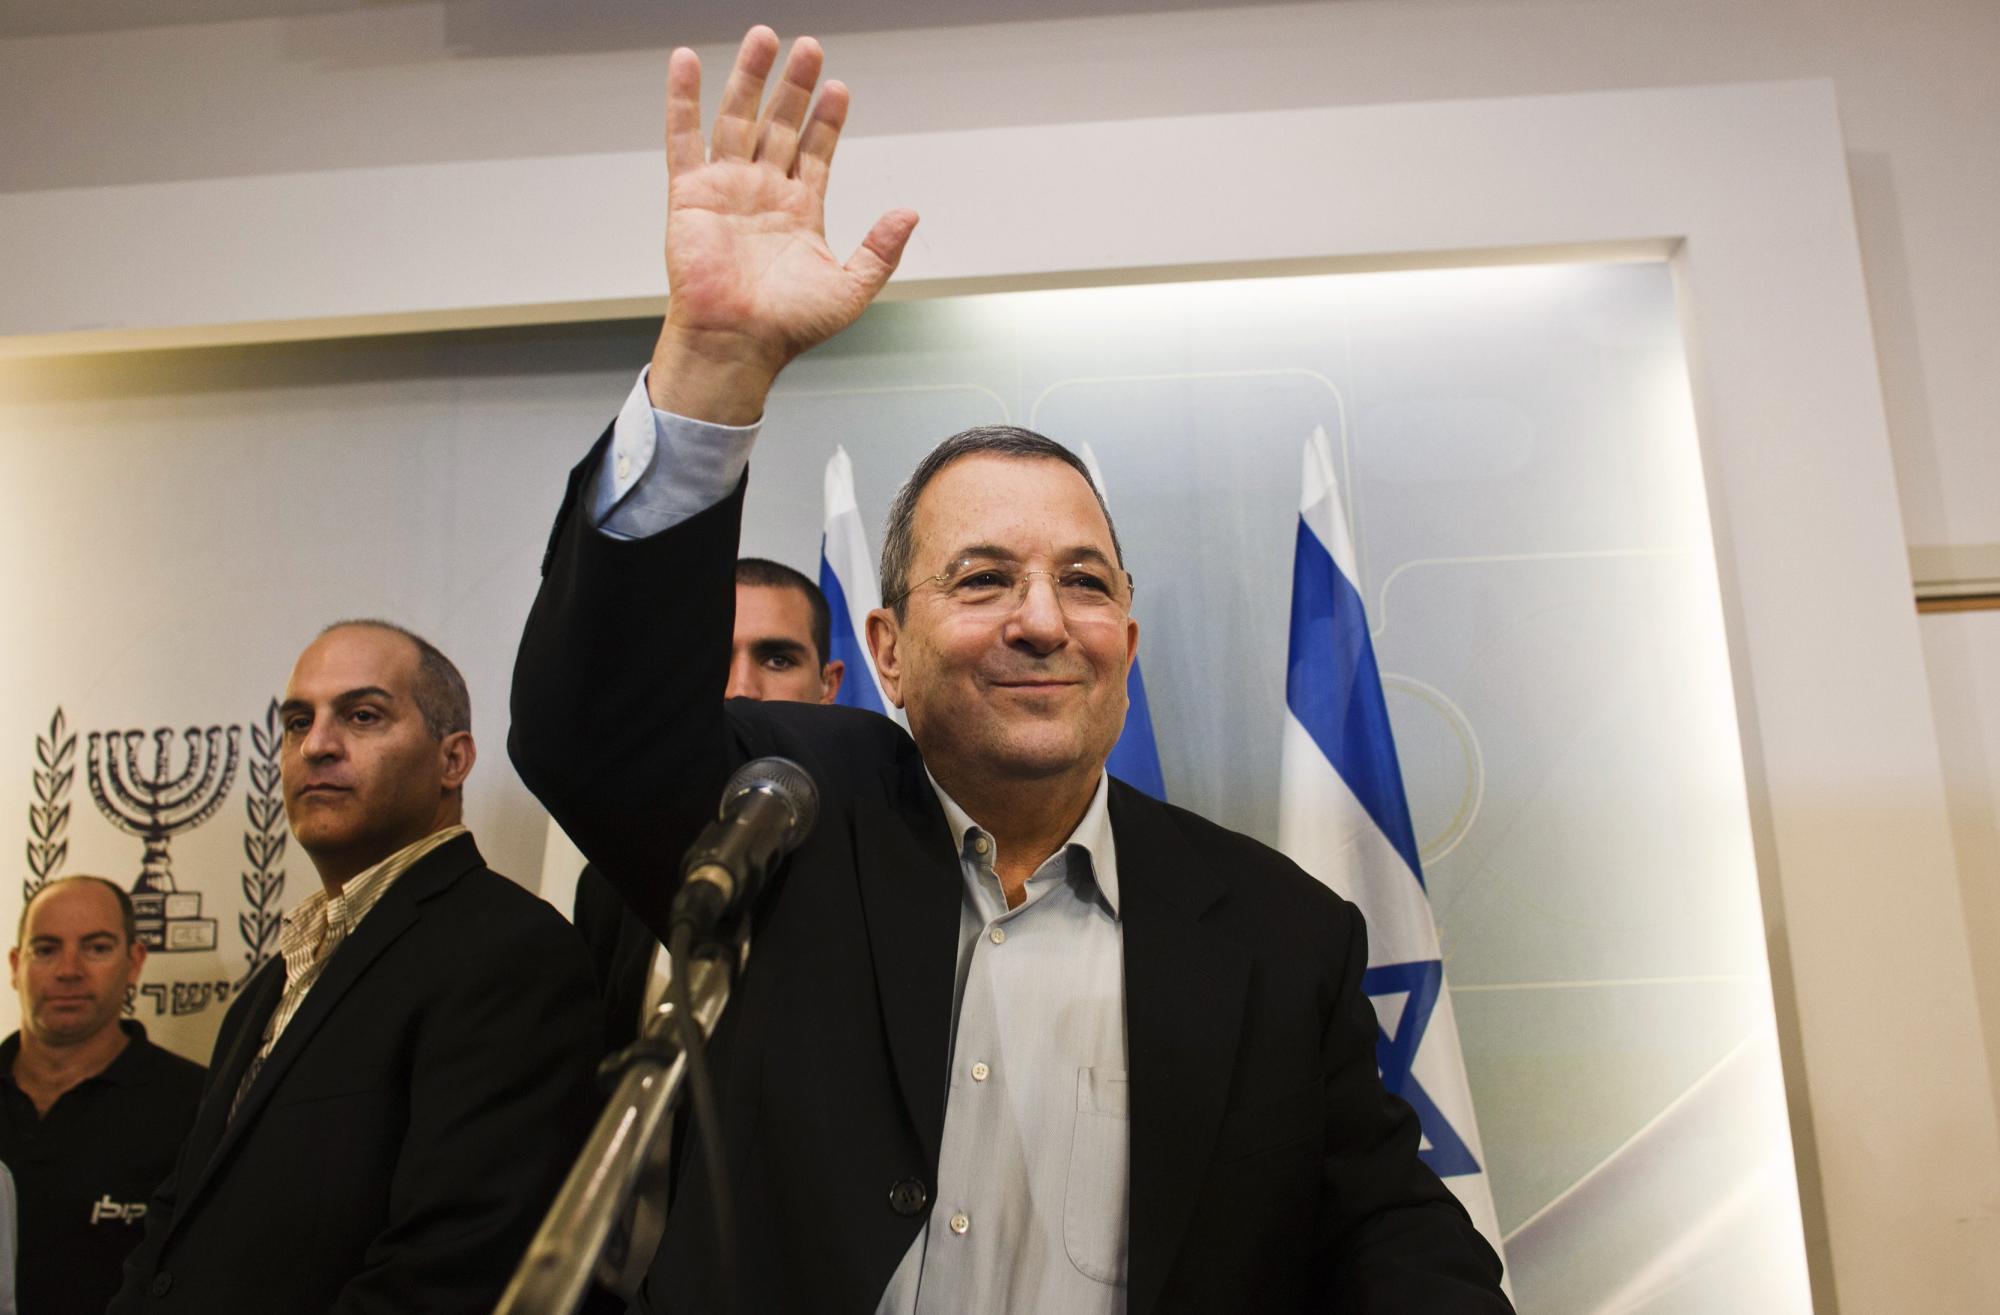 以色列防长巴拉克将退出政坛 专家称政府或集体“向右转”